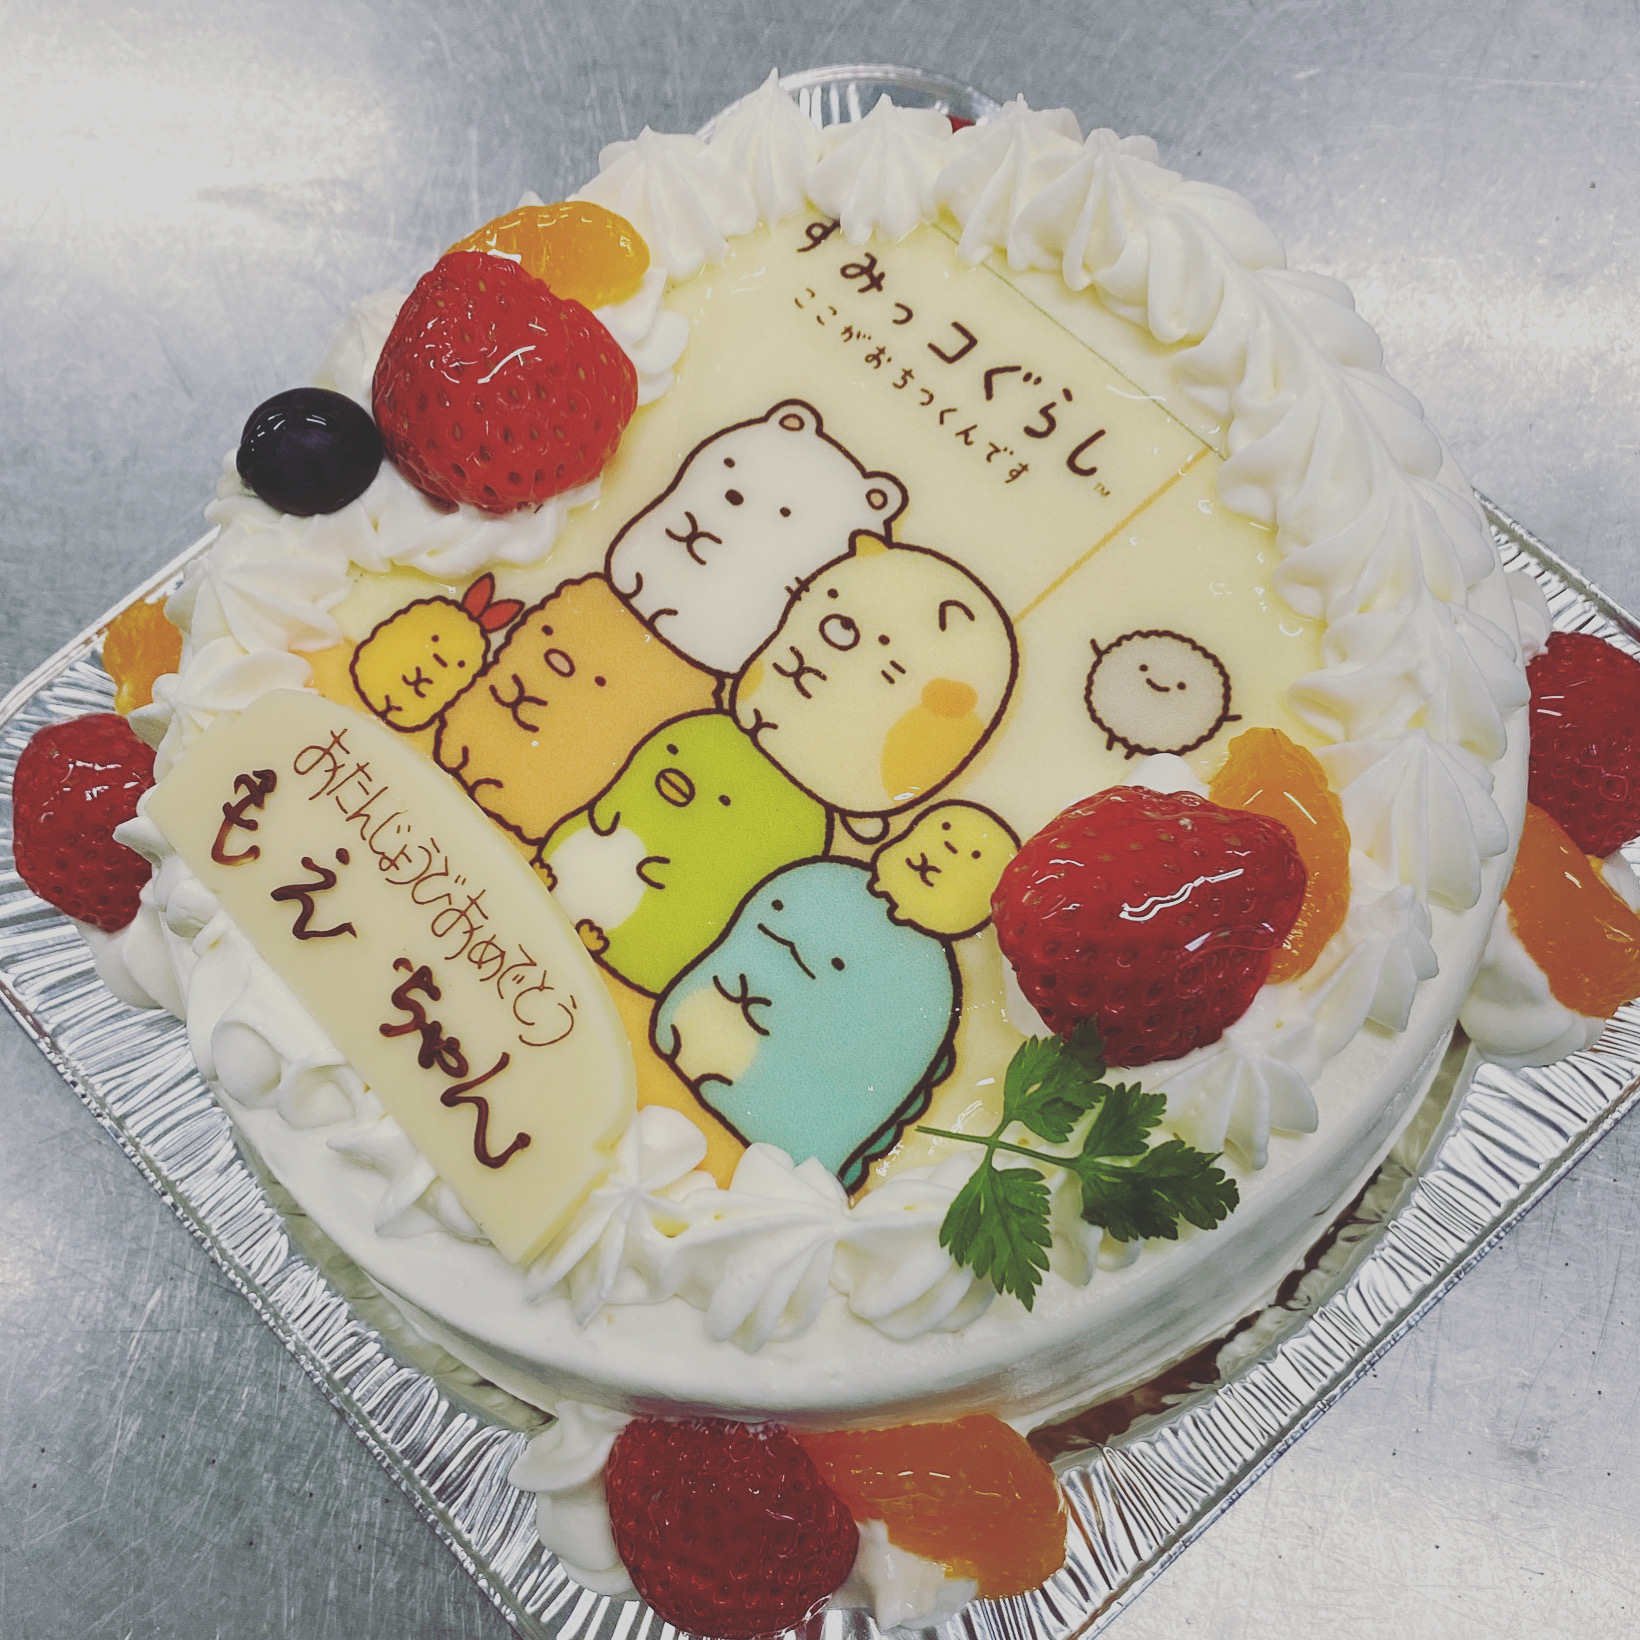 熱海 湯河原 カワイイ誕生日ケーキのオーダーキャラクターフォト 写真 デコレーションケーキ Atami 熱海 住吉屋の店長ブログ